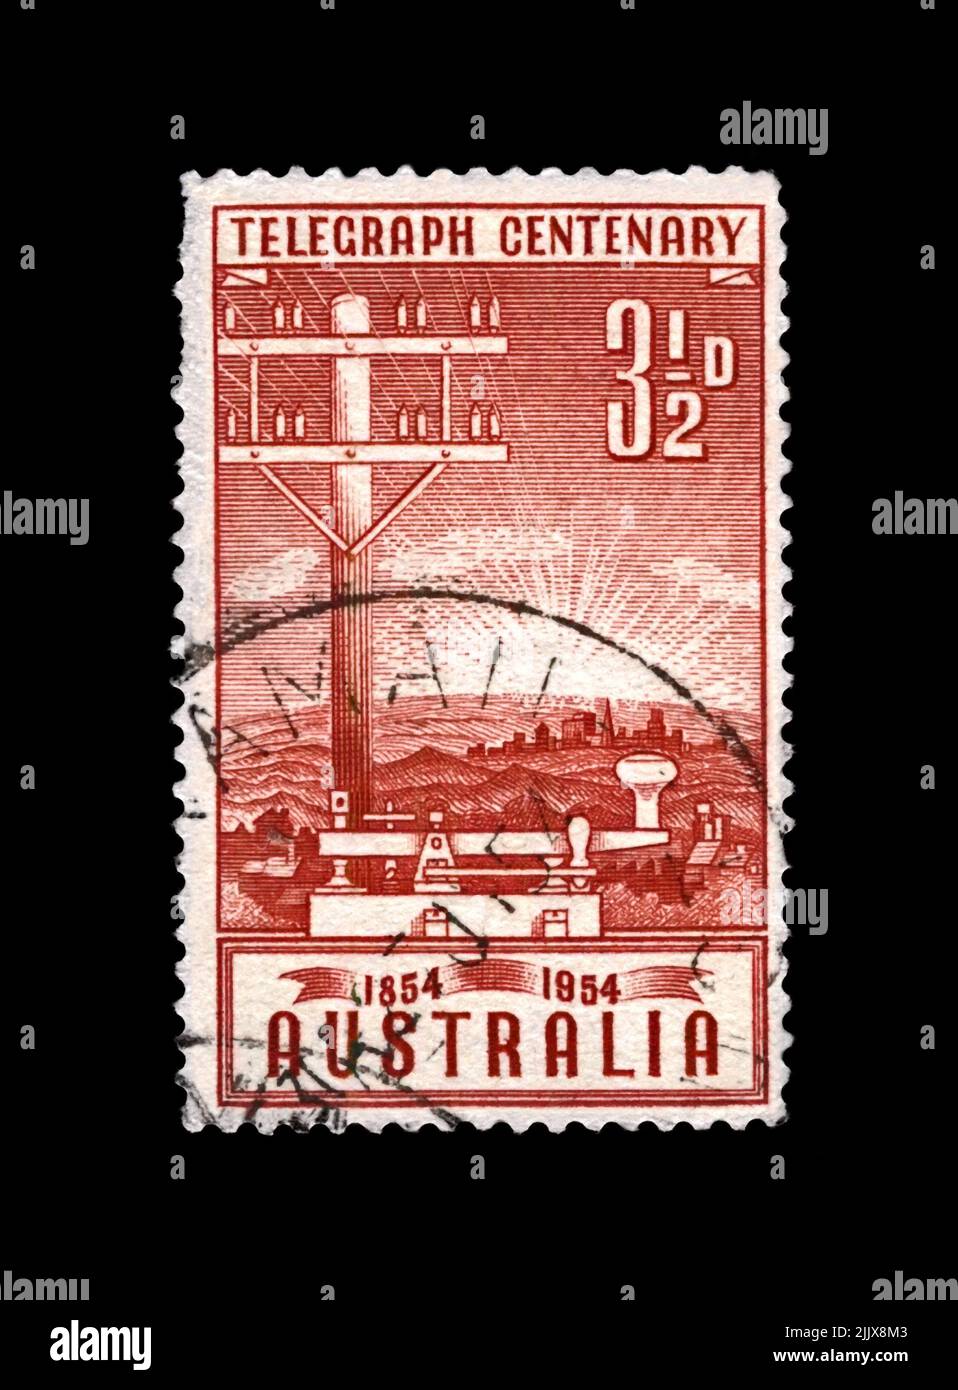 telegraph polo e chiave, 100th° anniversario di inaugurazione del telegrafo in Australia, circa 1954. Timbro postale annullato stampato in Australia Foto Stock